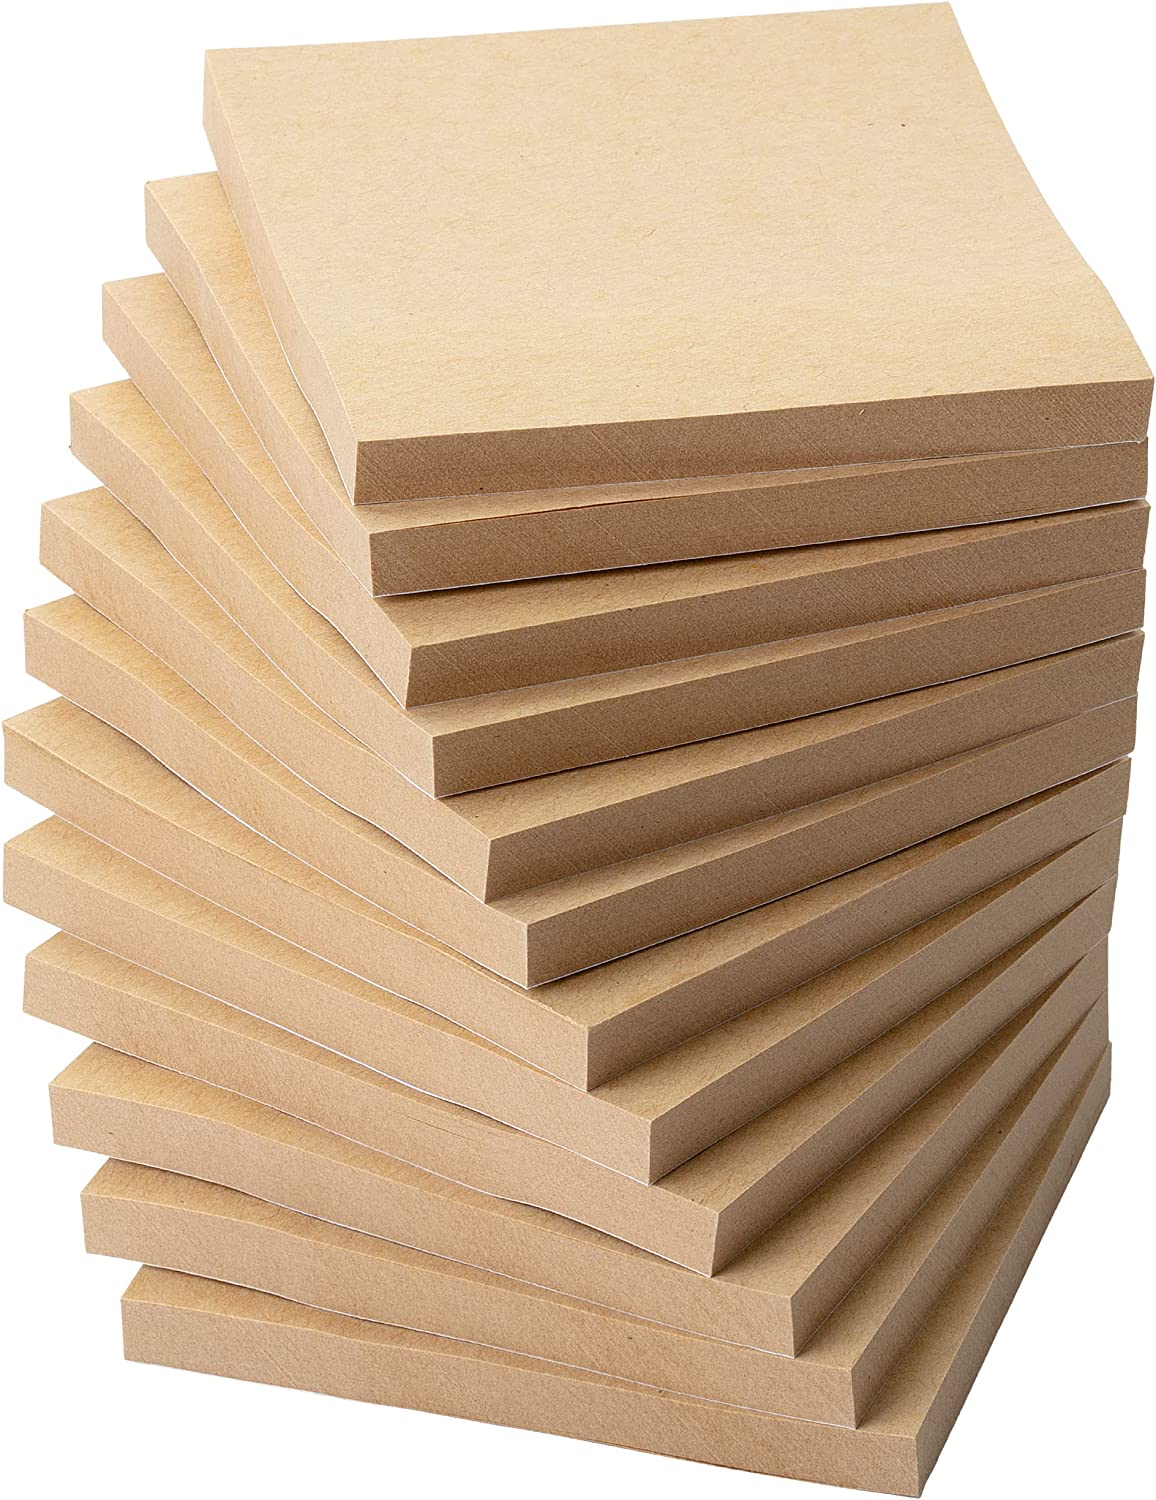 Mr. Pen- Kraft Sticky Notes, 3”x3”, 12 Pads, Kraft Paper Sticky